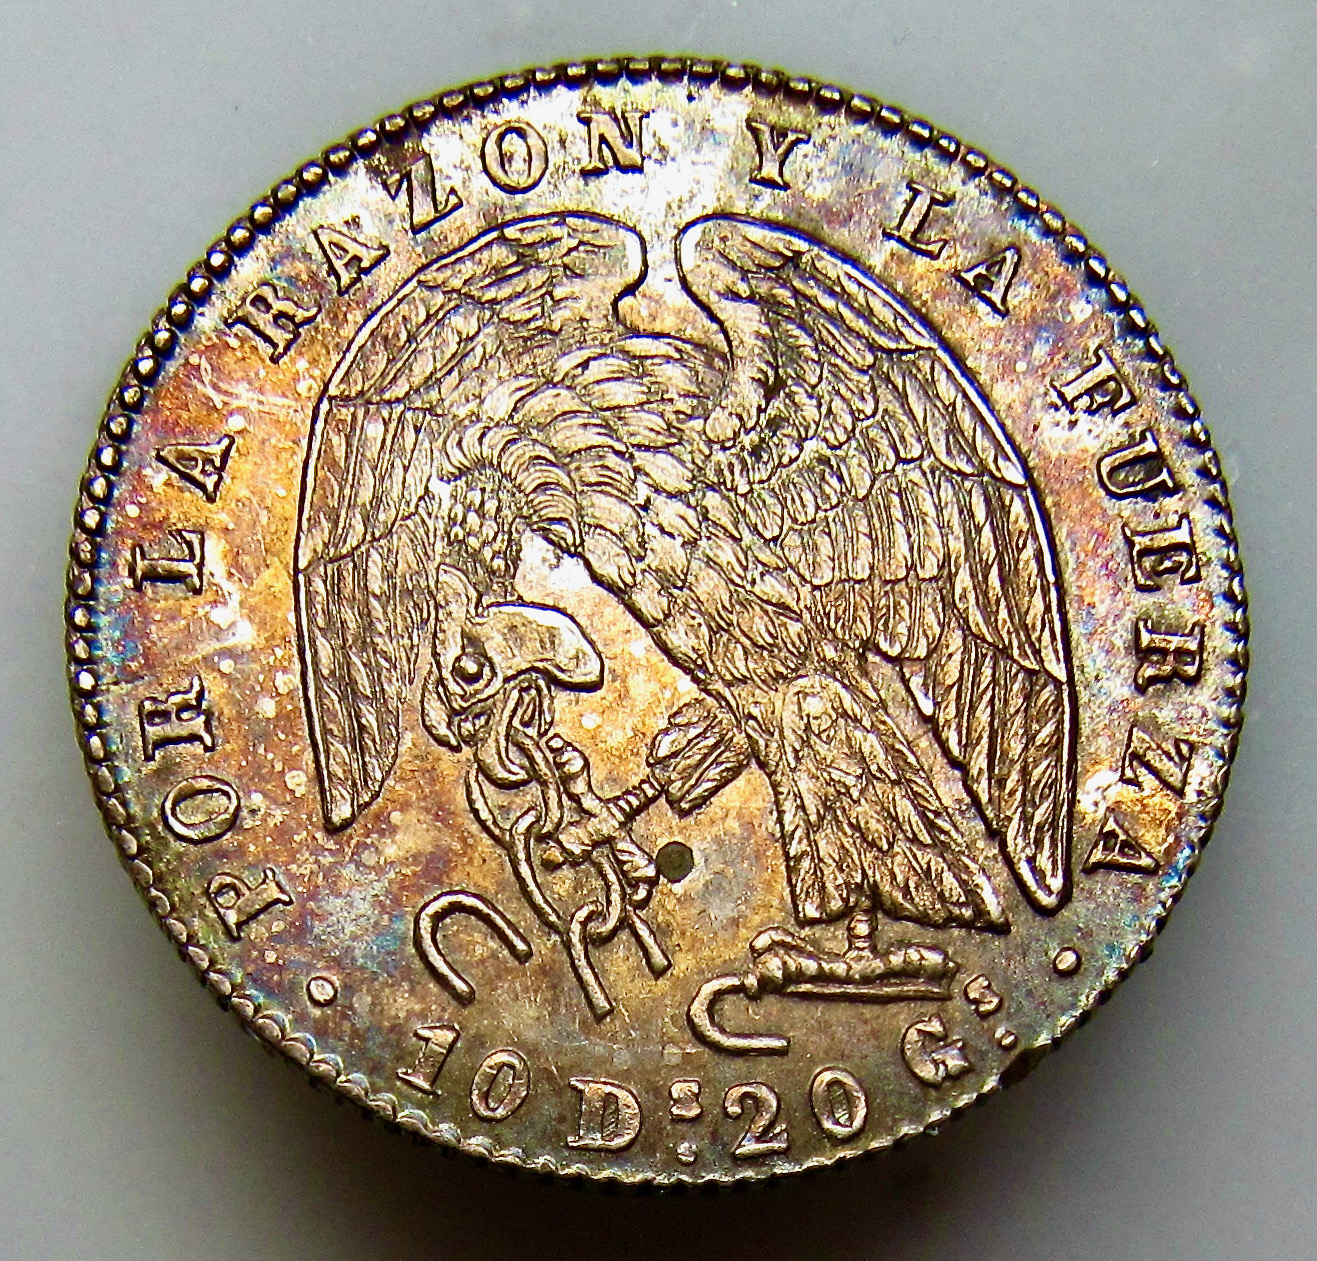 Chile 2 reales  1850  - OBV1  darker - VGP - May 2021 - 1.jpeg